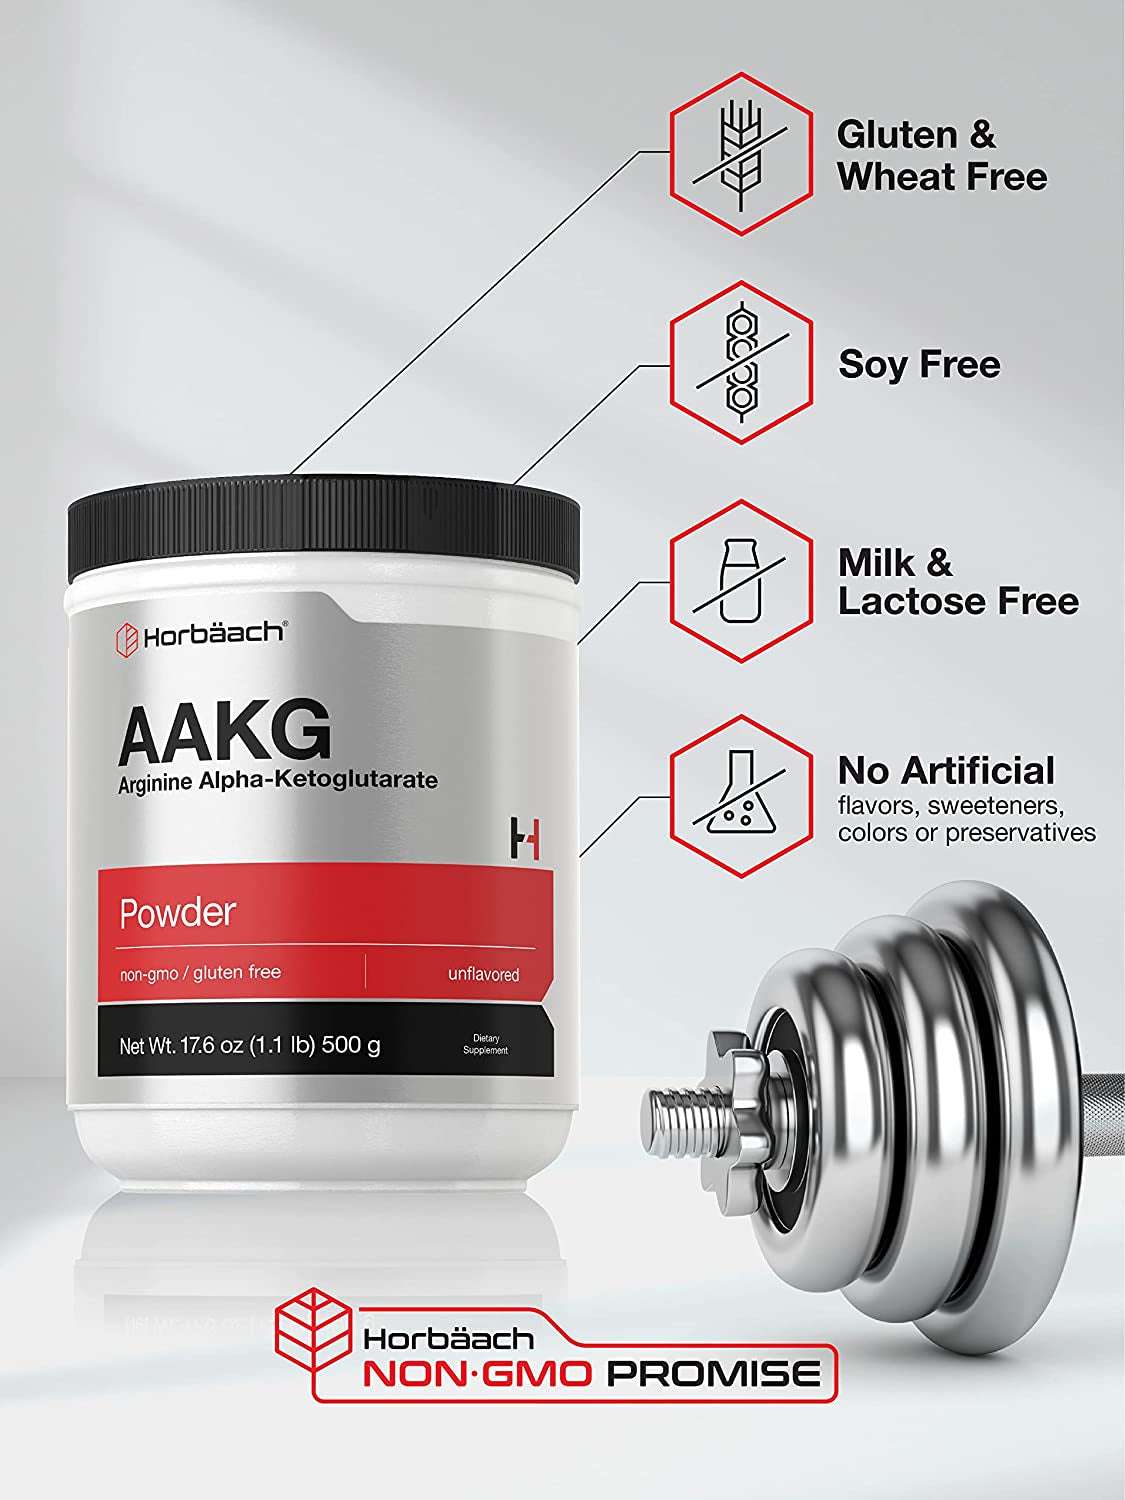 AAKG Powder | Arginine Alpha-Ketoglutarate | 1.1Lbs (17.6 Oz) | Vegetarian, Non-Gmo, & Gluten Free Supplement | by Horbaach